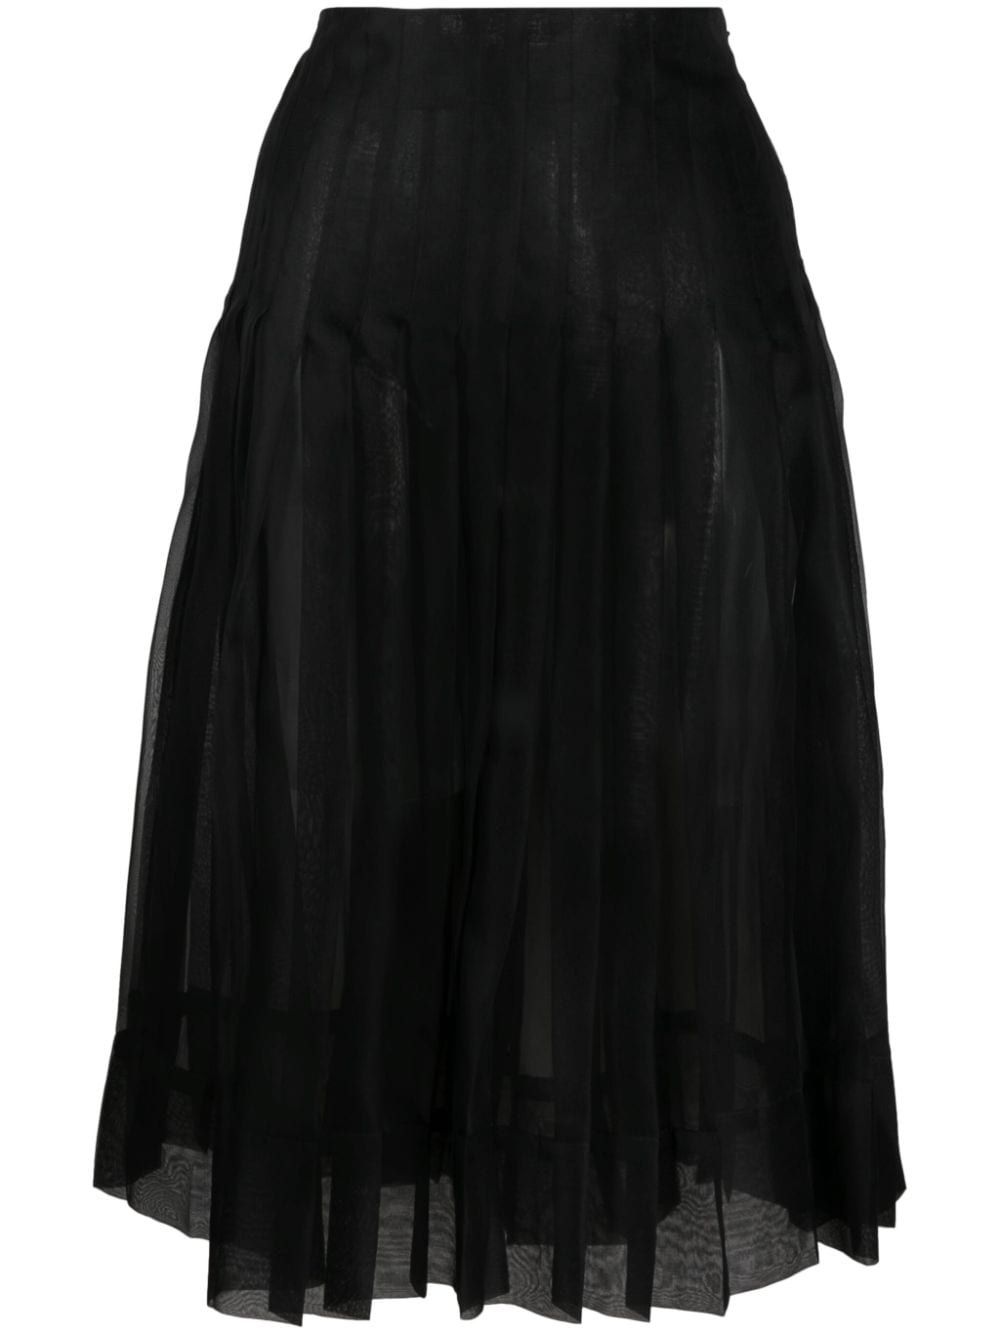 The Tudi pleated midi skirt - 1